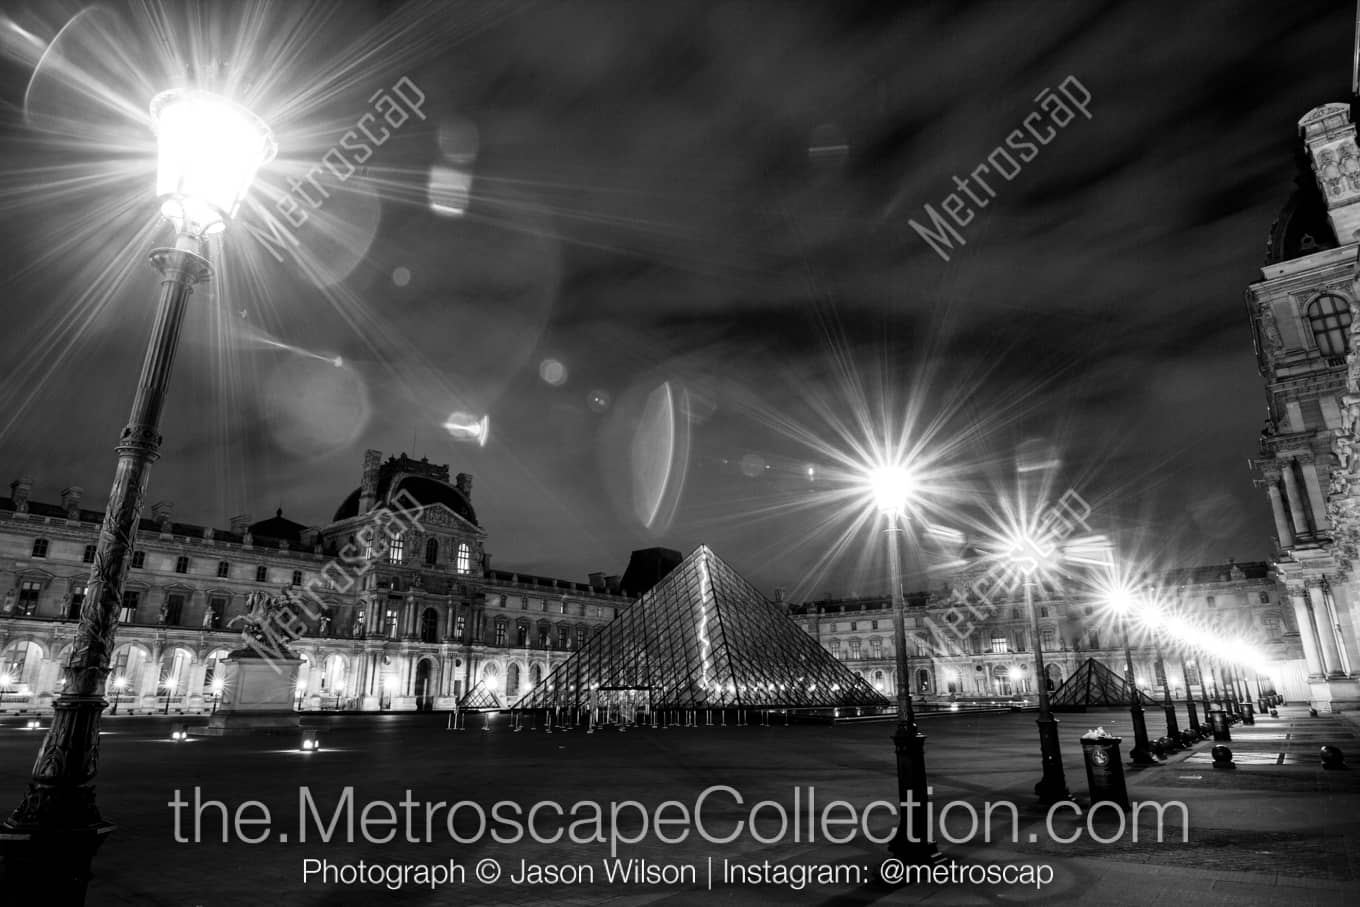 Paris Ile-De-France Picture at Night